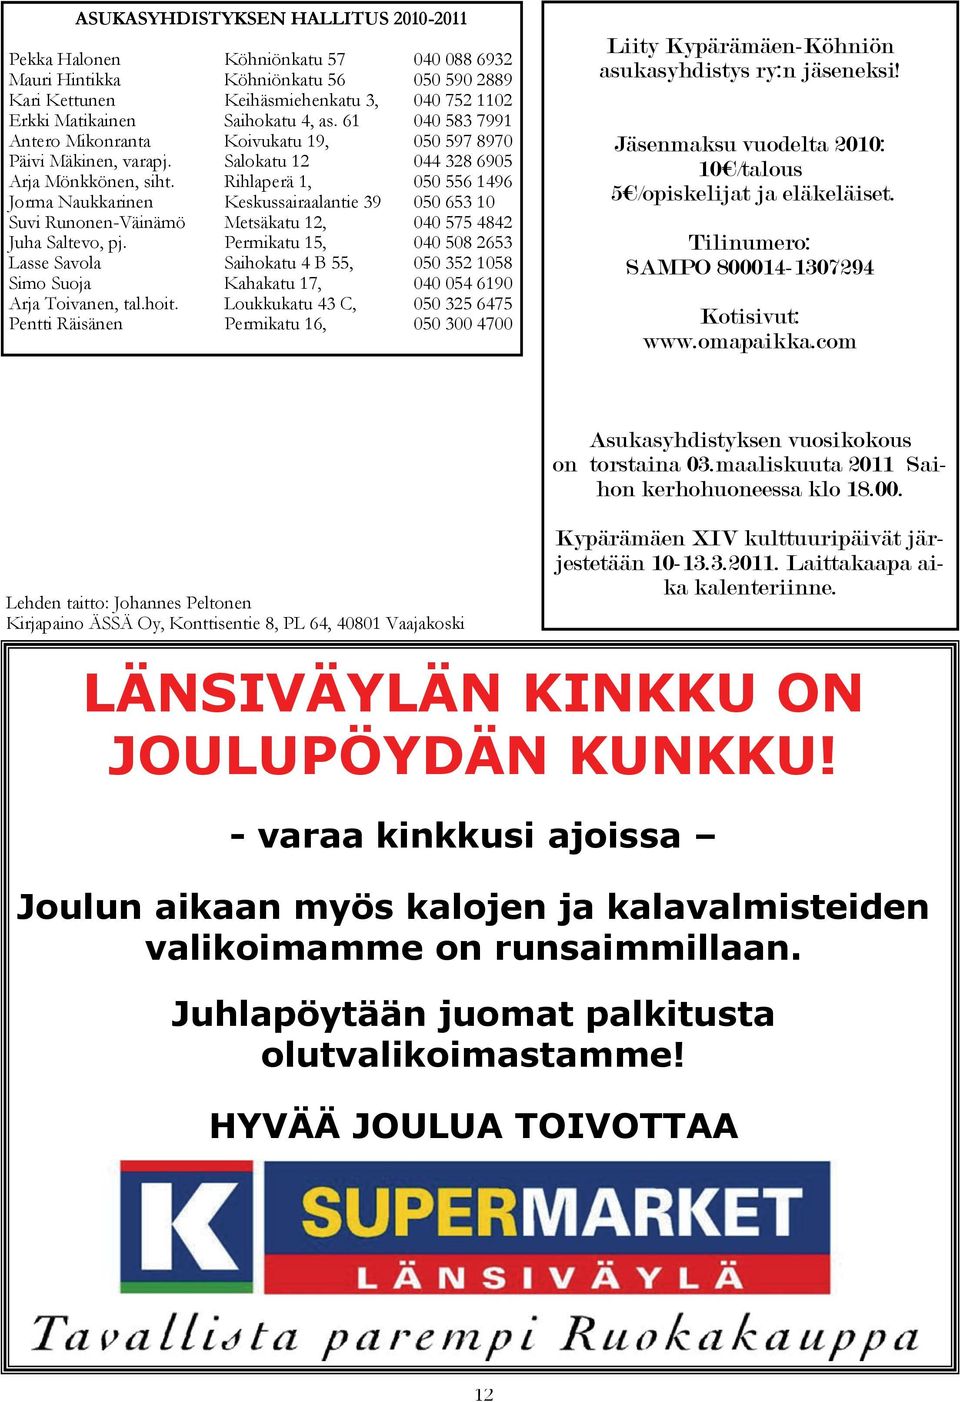 Rihlaperä 1, 050 556 1496 Jorma Naukkarinen Keskussairaalantie 39 050 653 10 Suvi Runonen-Väinämö Metsäkatu 12, 040 575 4842 Juha Saltevo, pj.